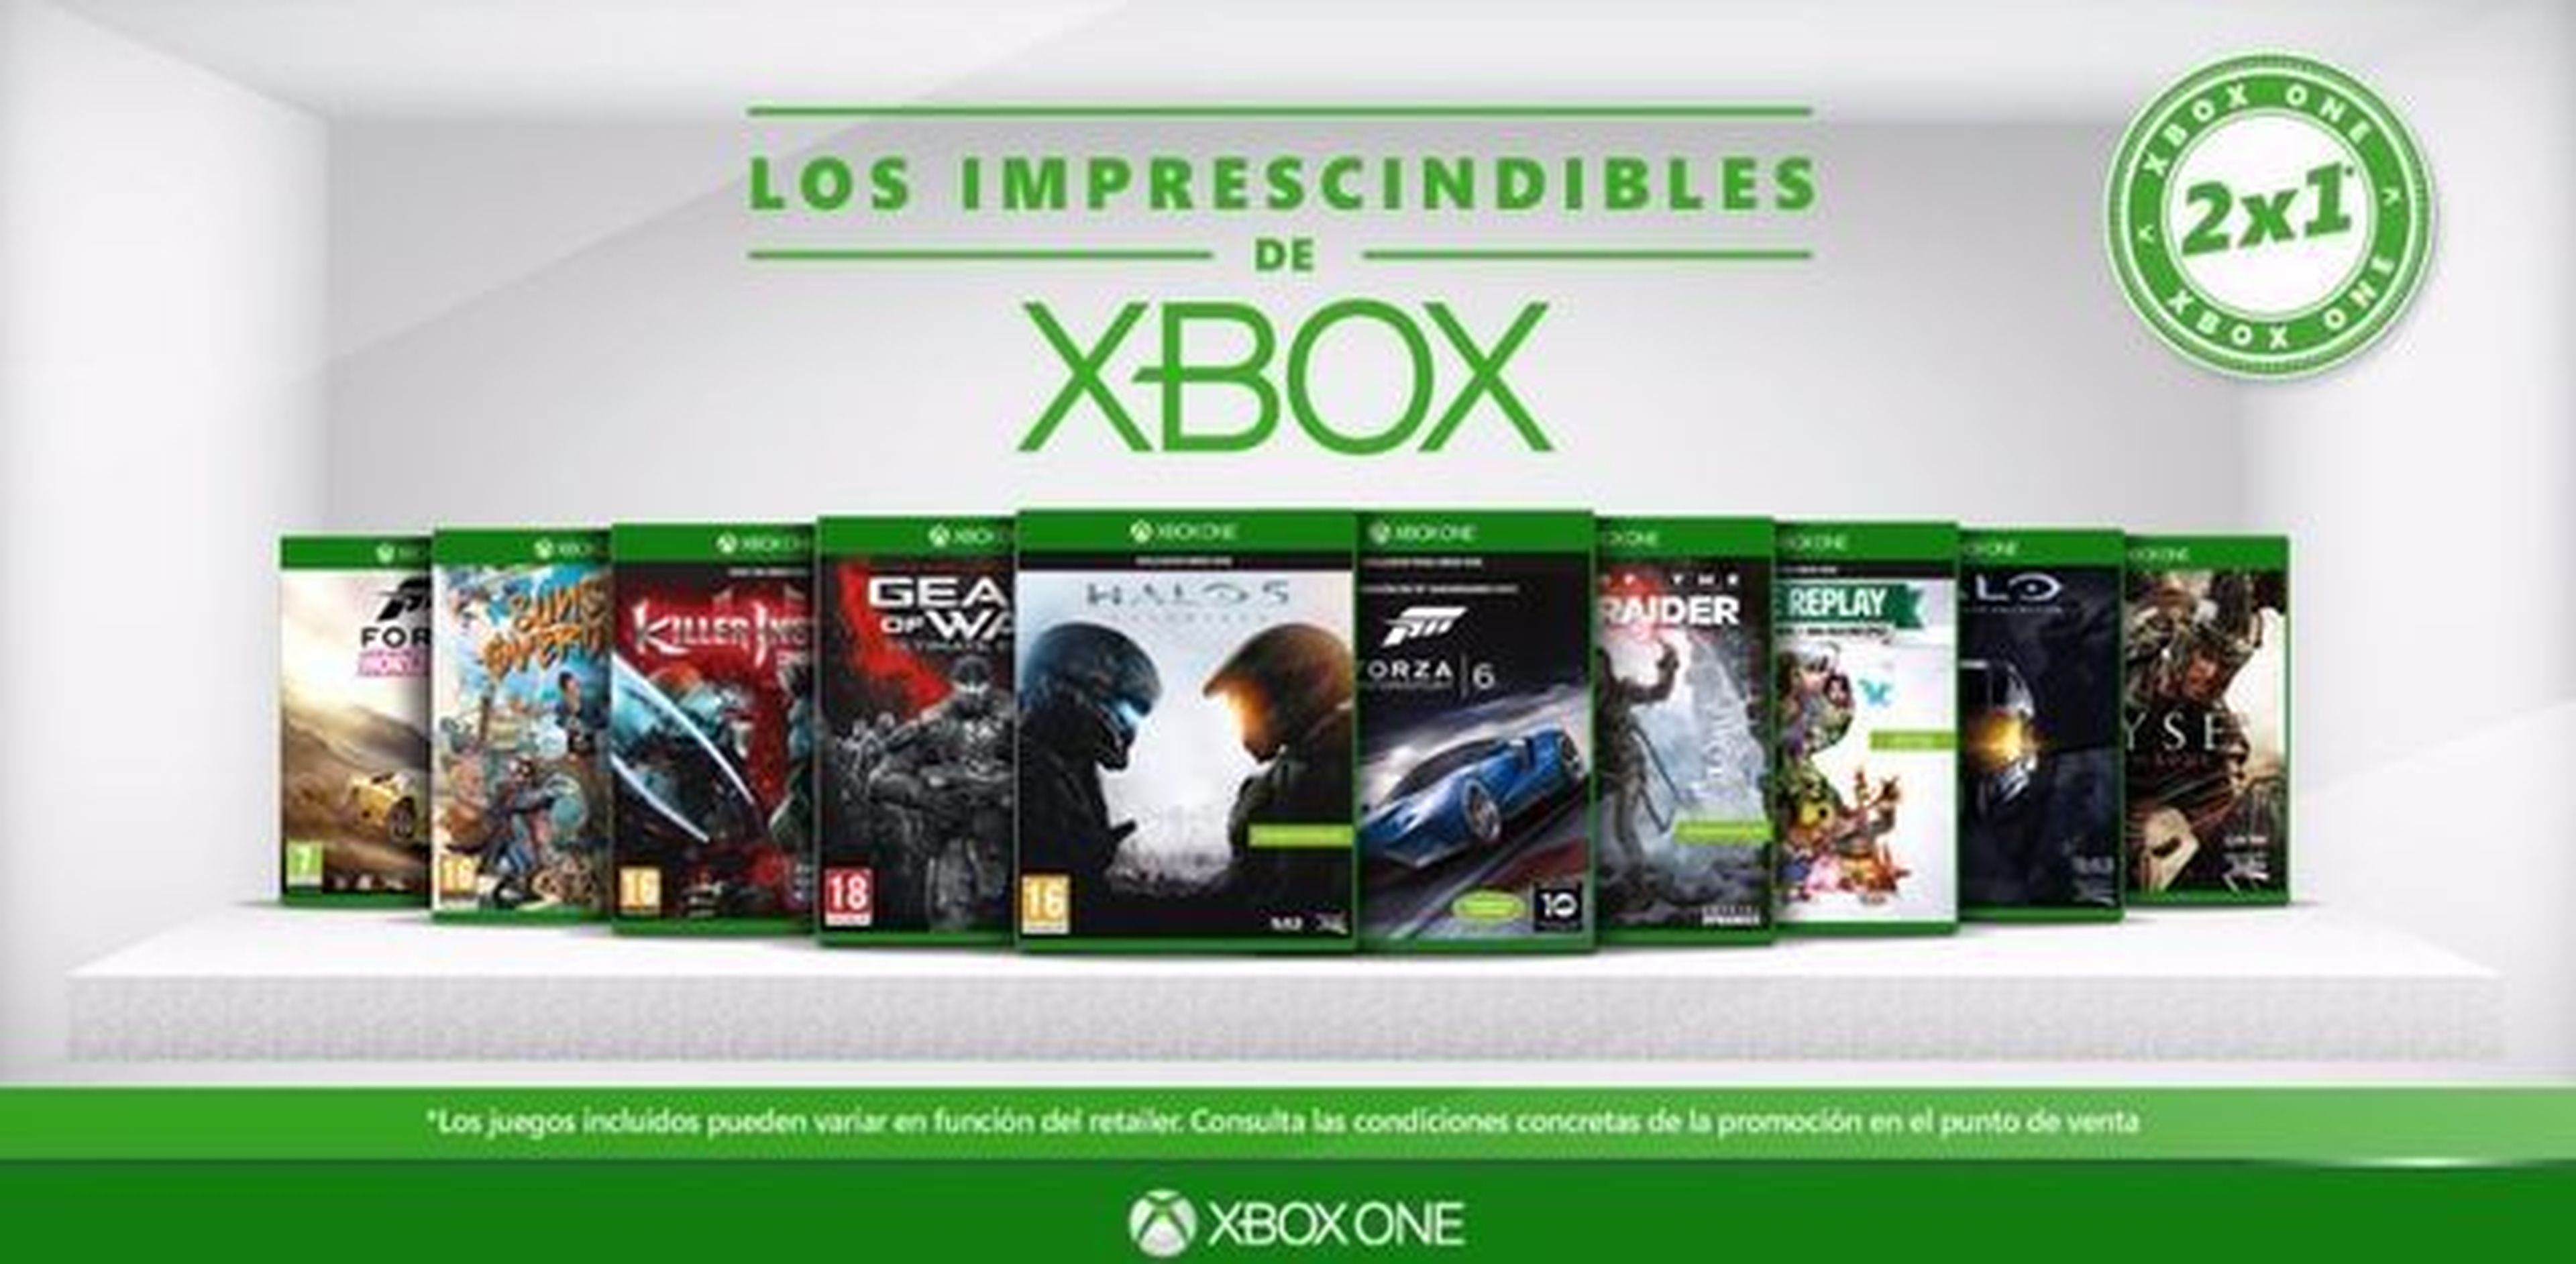 Xbox España anuncia "Los imprescindibles de Xbox"